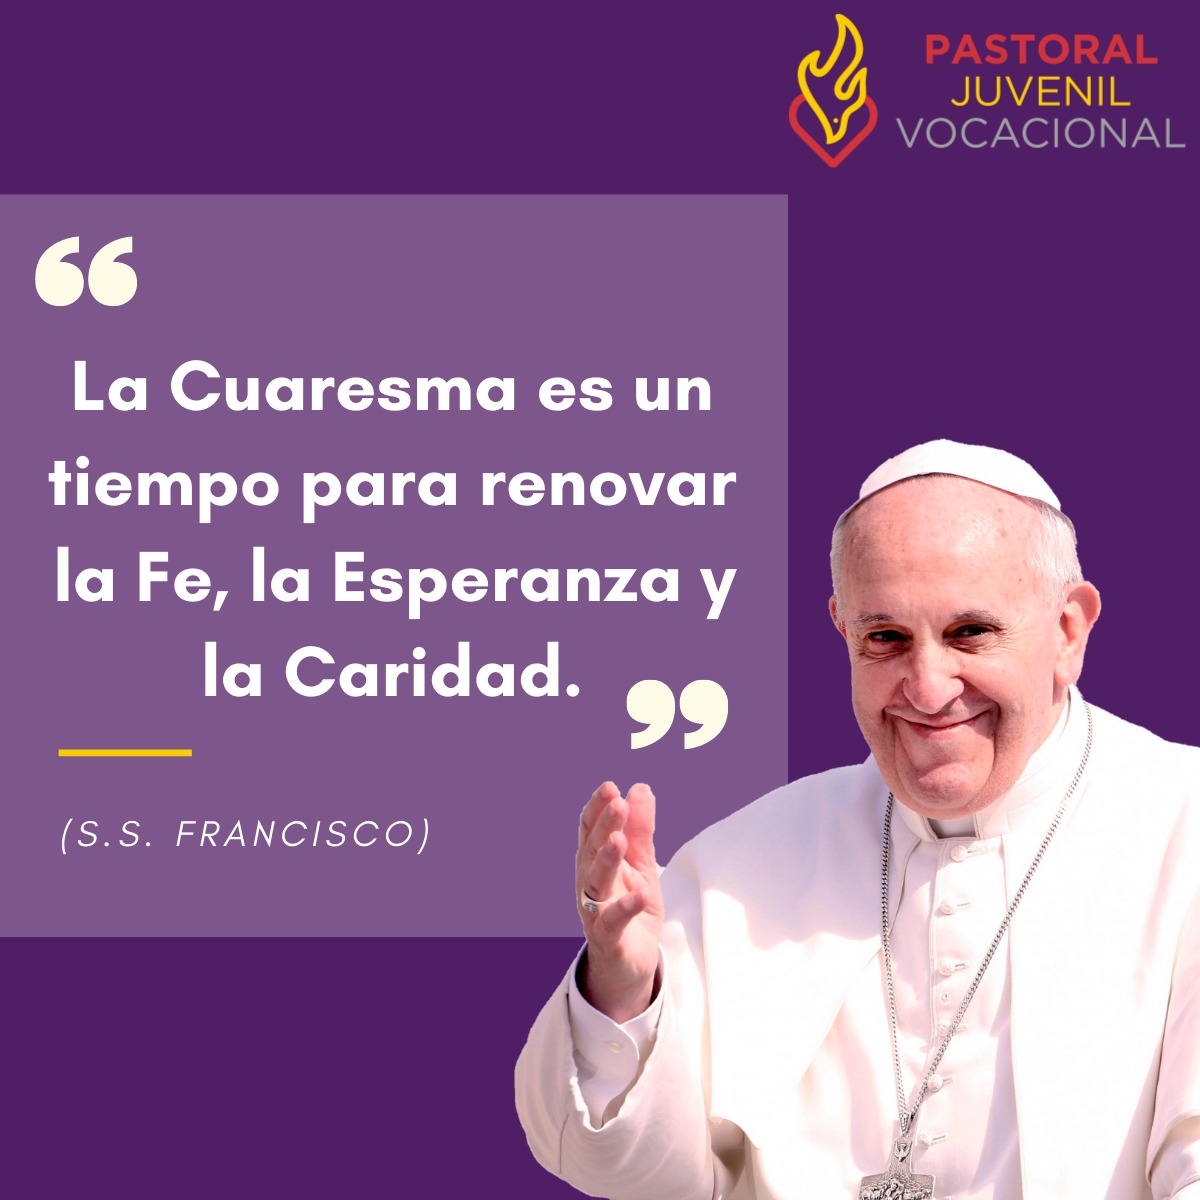 Mensaje del Papa Francisco para la Cuaresma 2021 Pastoral Juvenil